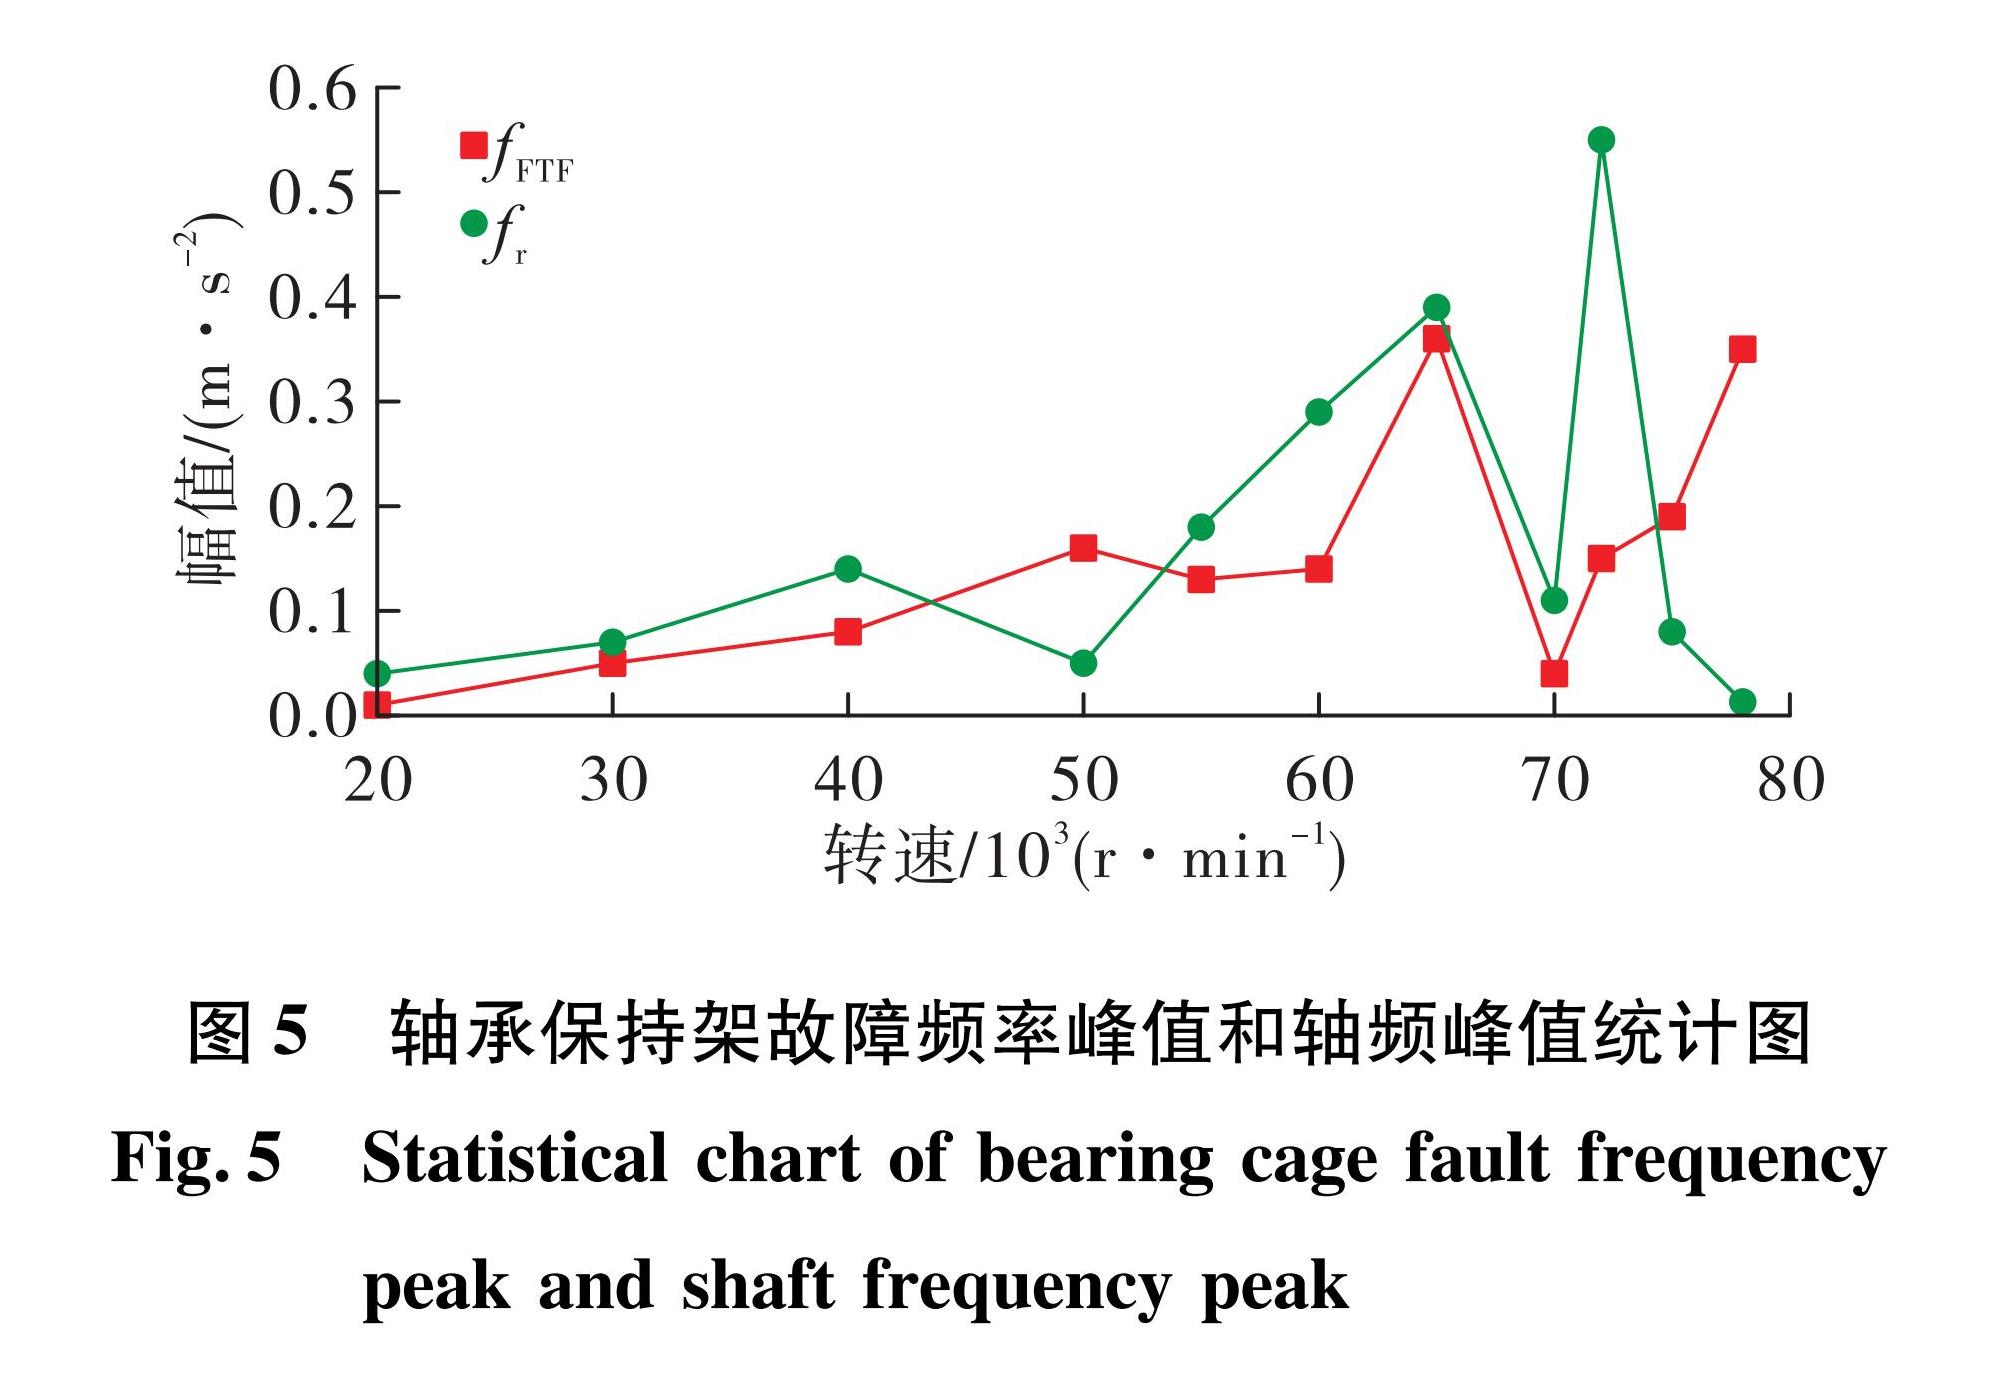 图5 轴承保持架故障频率峰值和轴频峰值统计图<br/>Fig.5 Statistical chart of bearing cage fault frequency peak and shaft frequency peak